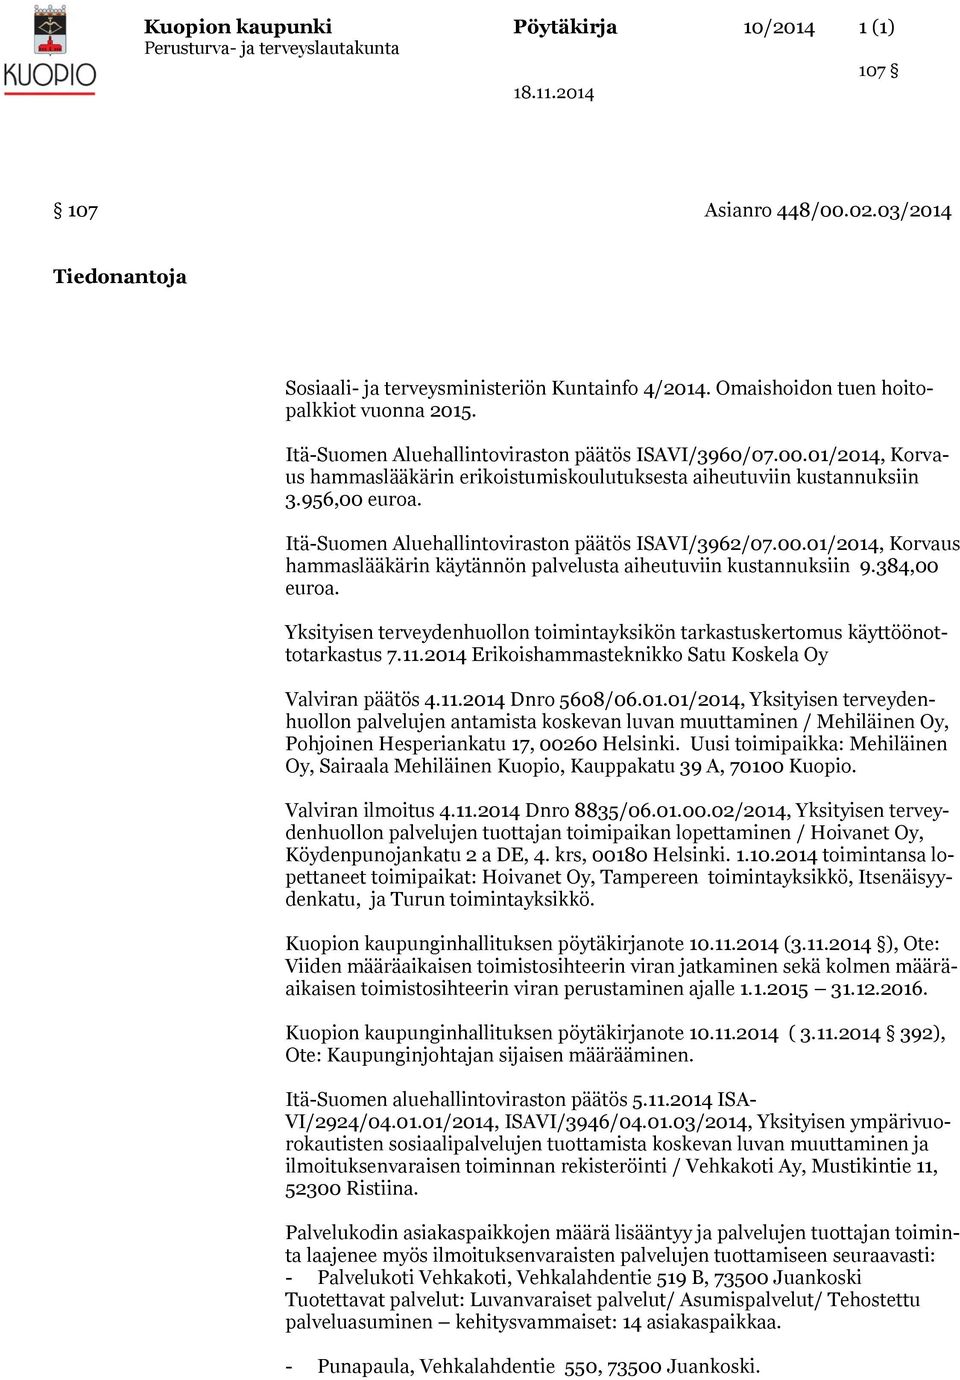 Itä-Suomen Aluehallintoviraston päätös ISAVI/3962/07.00.01/2014, Korvaus hammaslääkärin käytännön palvelusta aiheutuviin kustannuksiin 9.384,00 euroa.